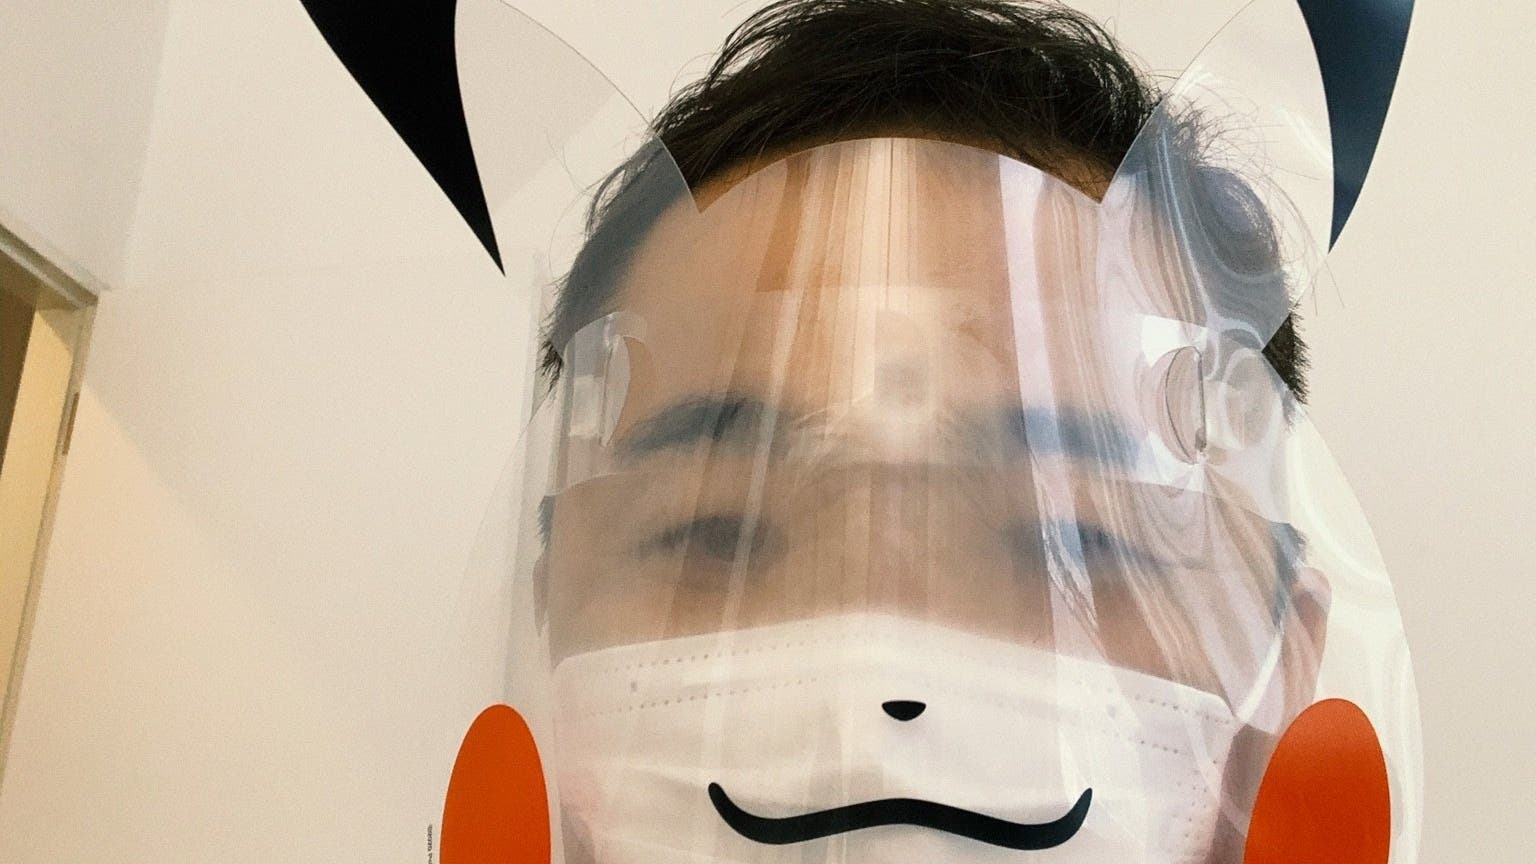 Junichi Masuda comparte una curiosa imagen con una máscara de protección de Pikachu